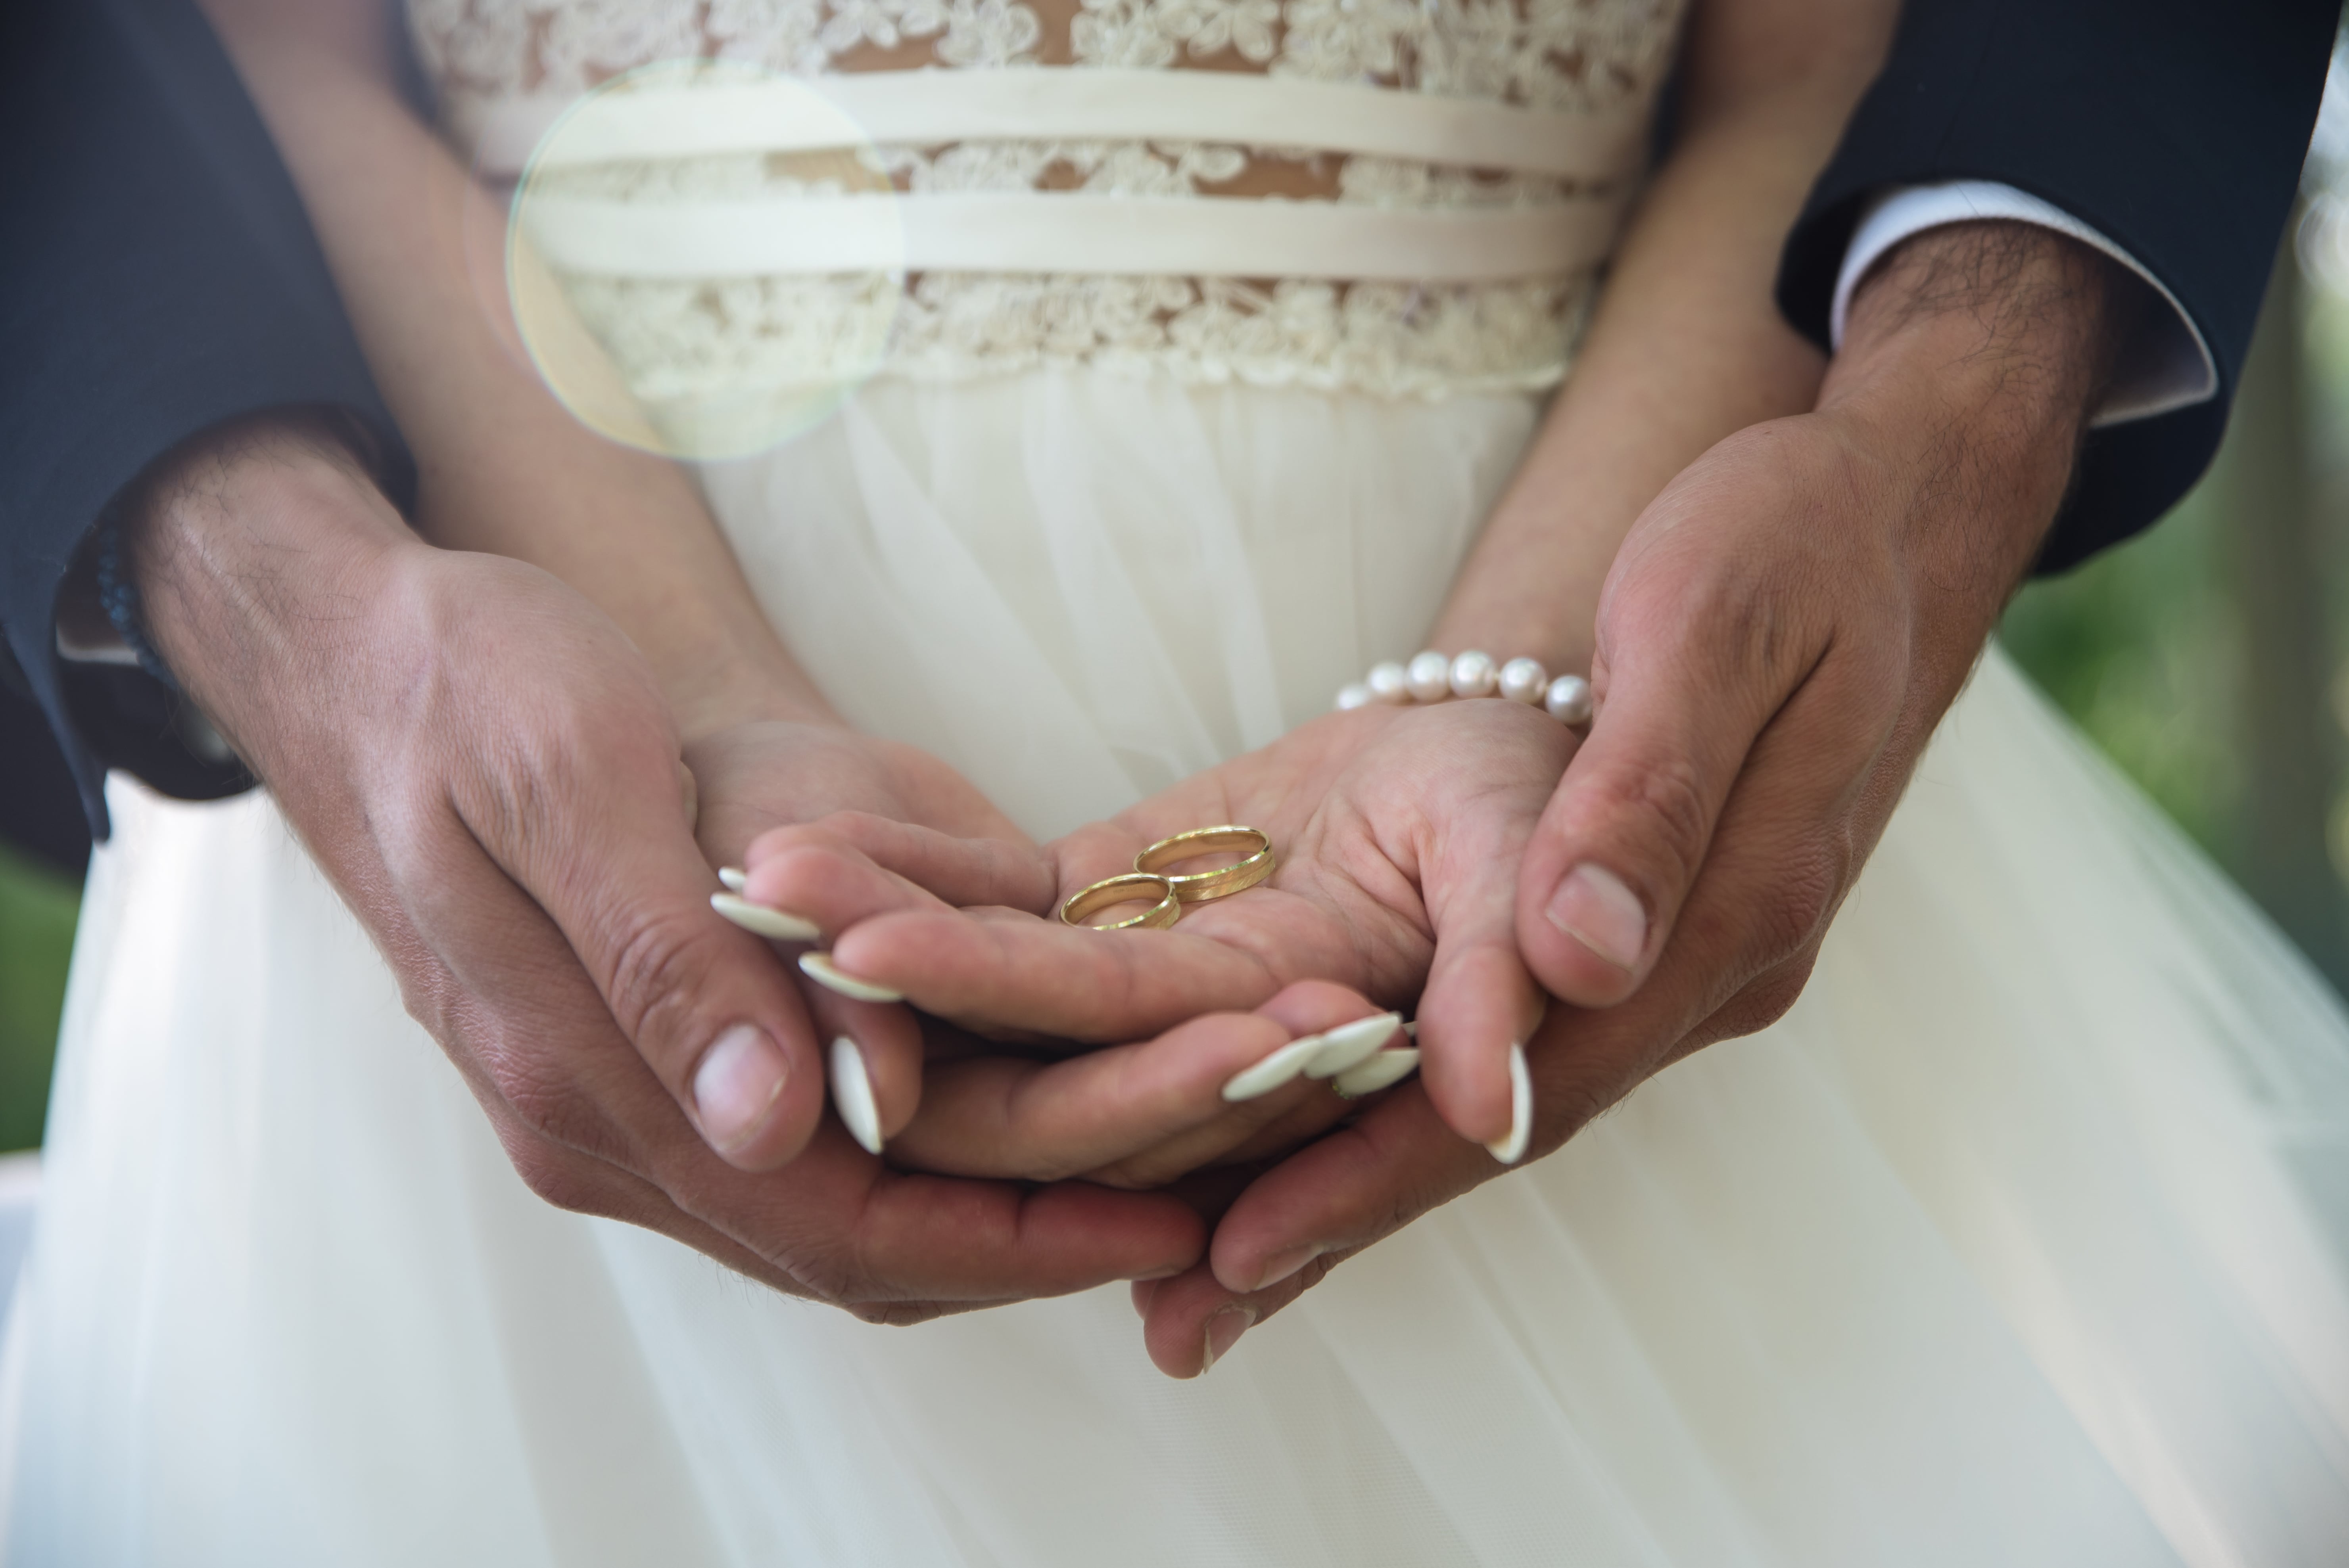 Второе замужество. Брак. Обручальные кольца на руках жениха и невесты. Свадьба руки с кольцами. Фото обручальных колец на руках жениха и невесты.